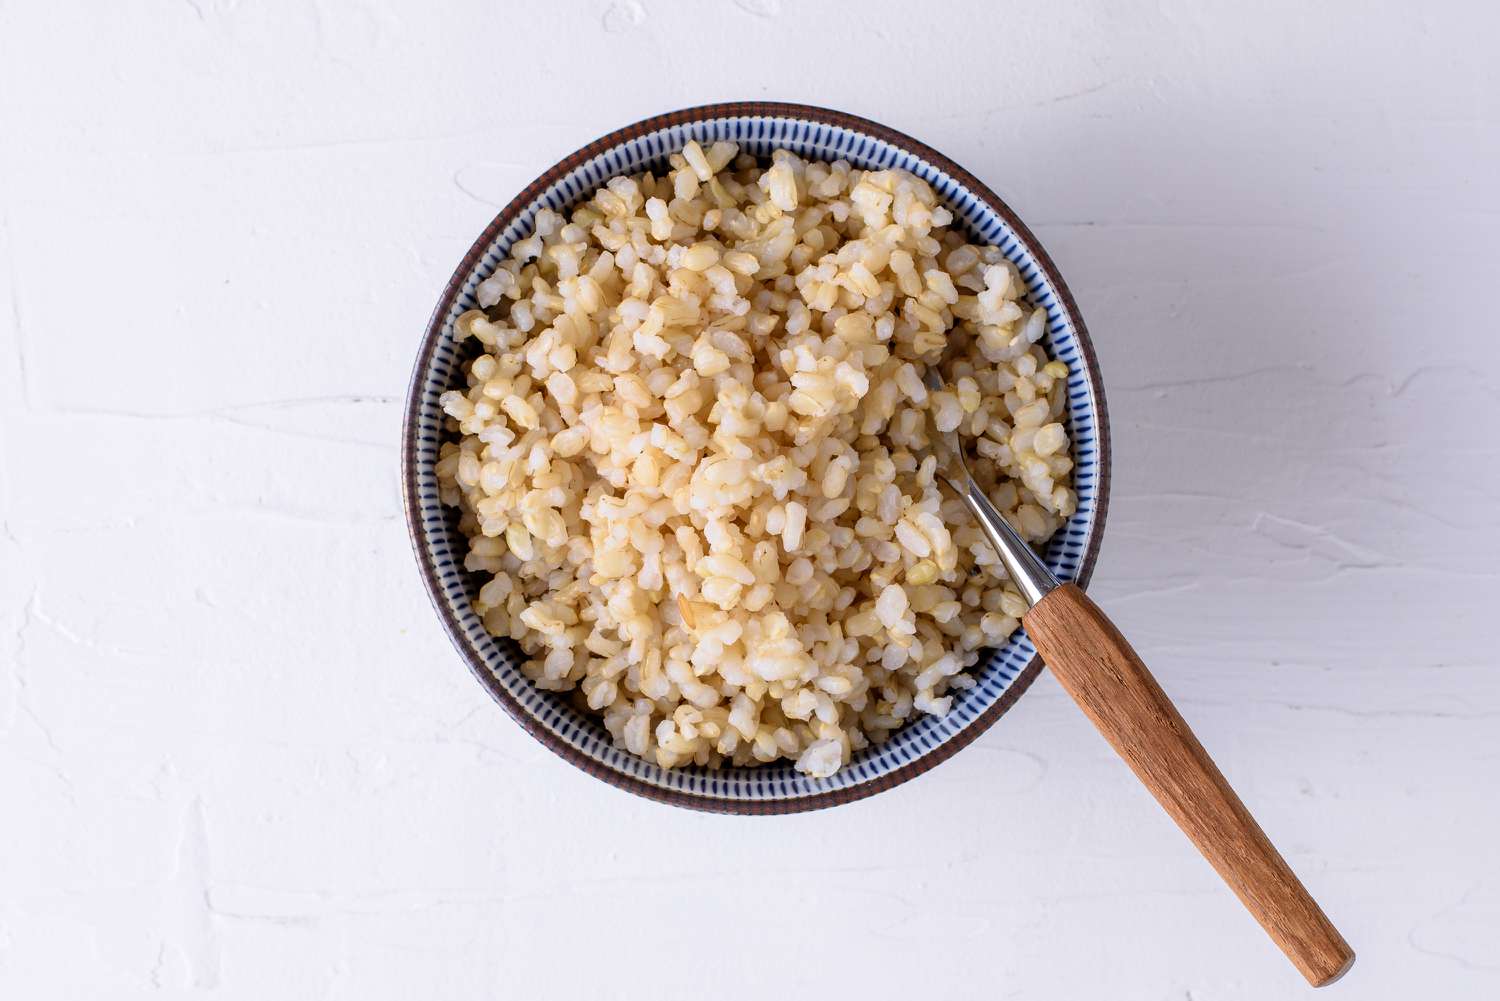 Bruine rijst